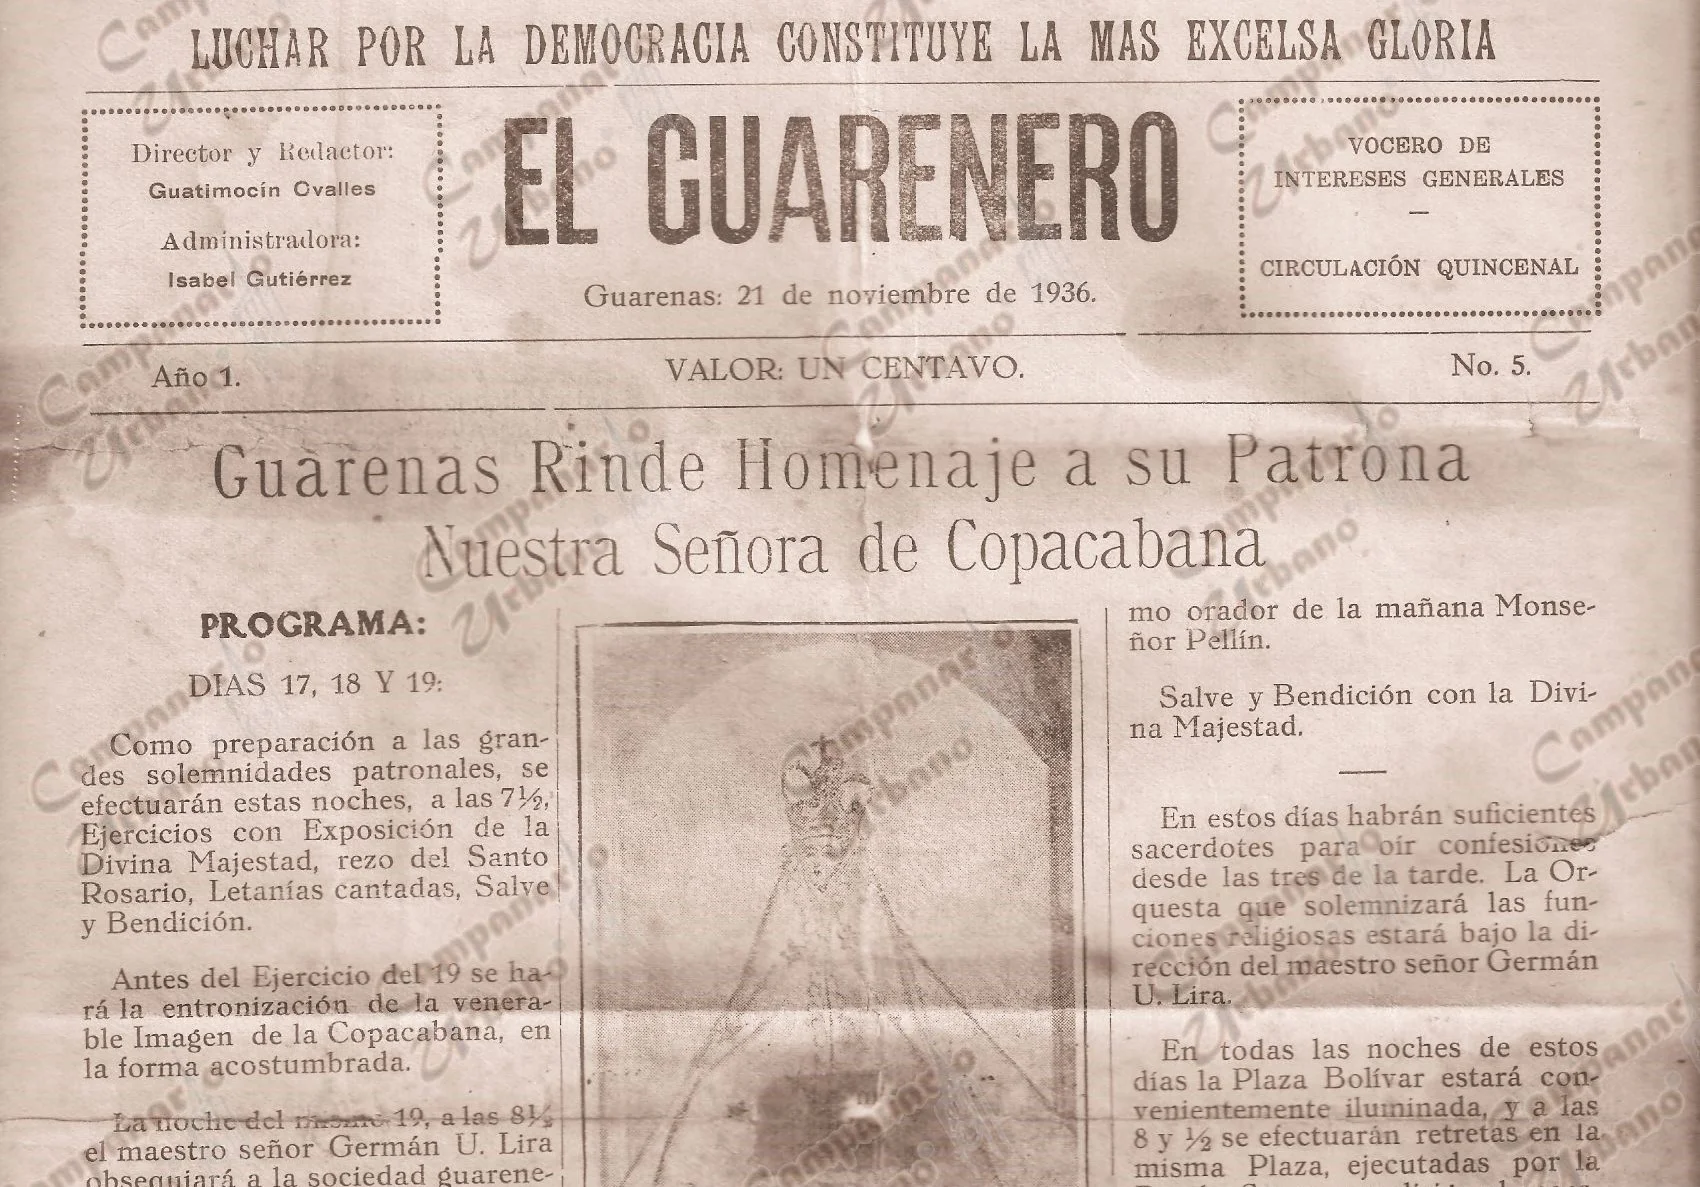 Impreso quincenal "El Guarenero", edición 5 del 21 de noviembre de 1936, con información del programa para la festividad de Nuestra Señora de Copacabana de Guarenas de ese año.